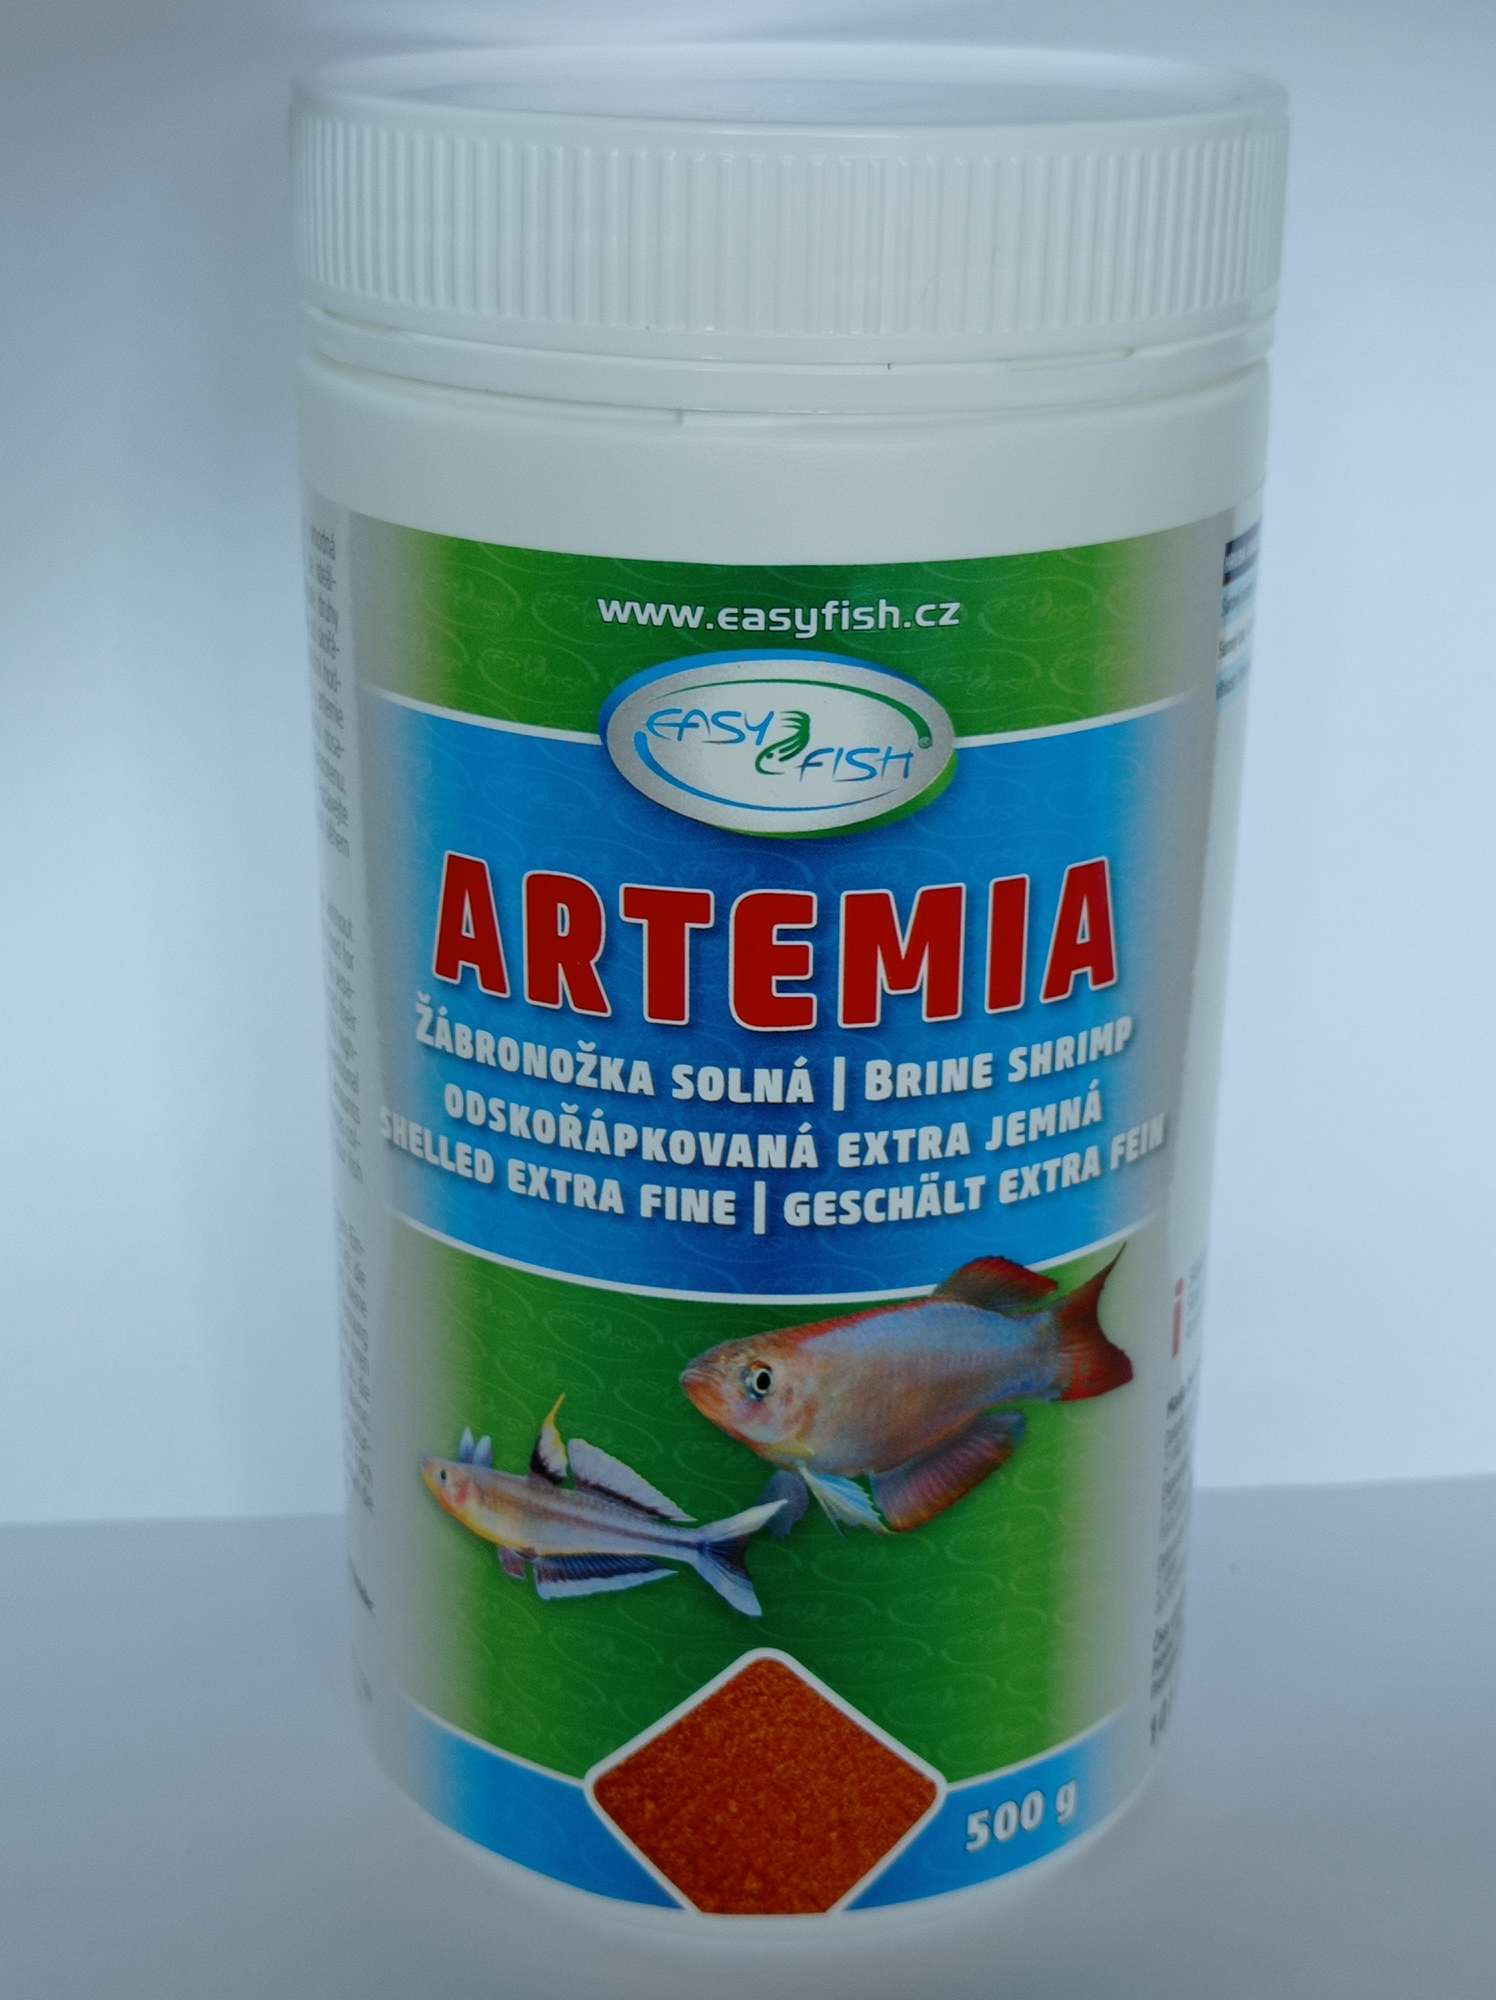 EasyFish Artemie odskořápkovaná extra jemná 500g